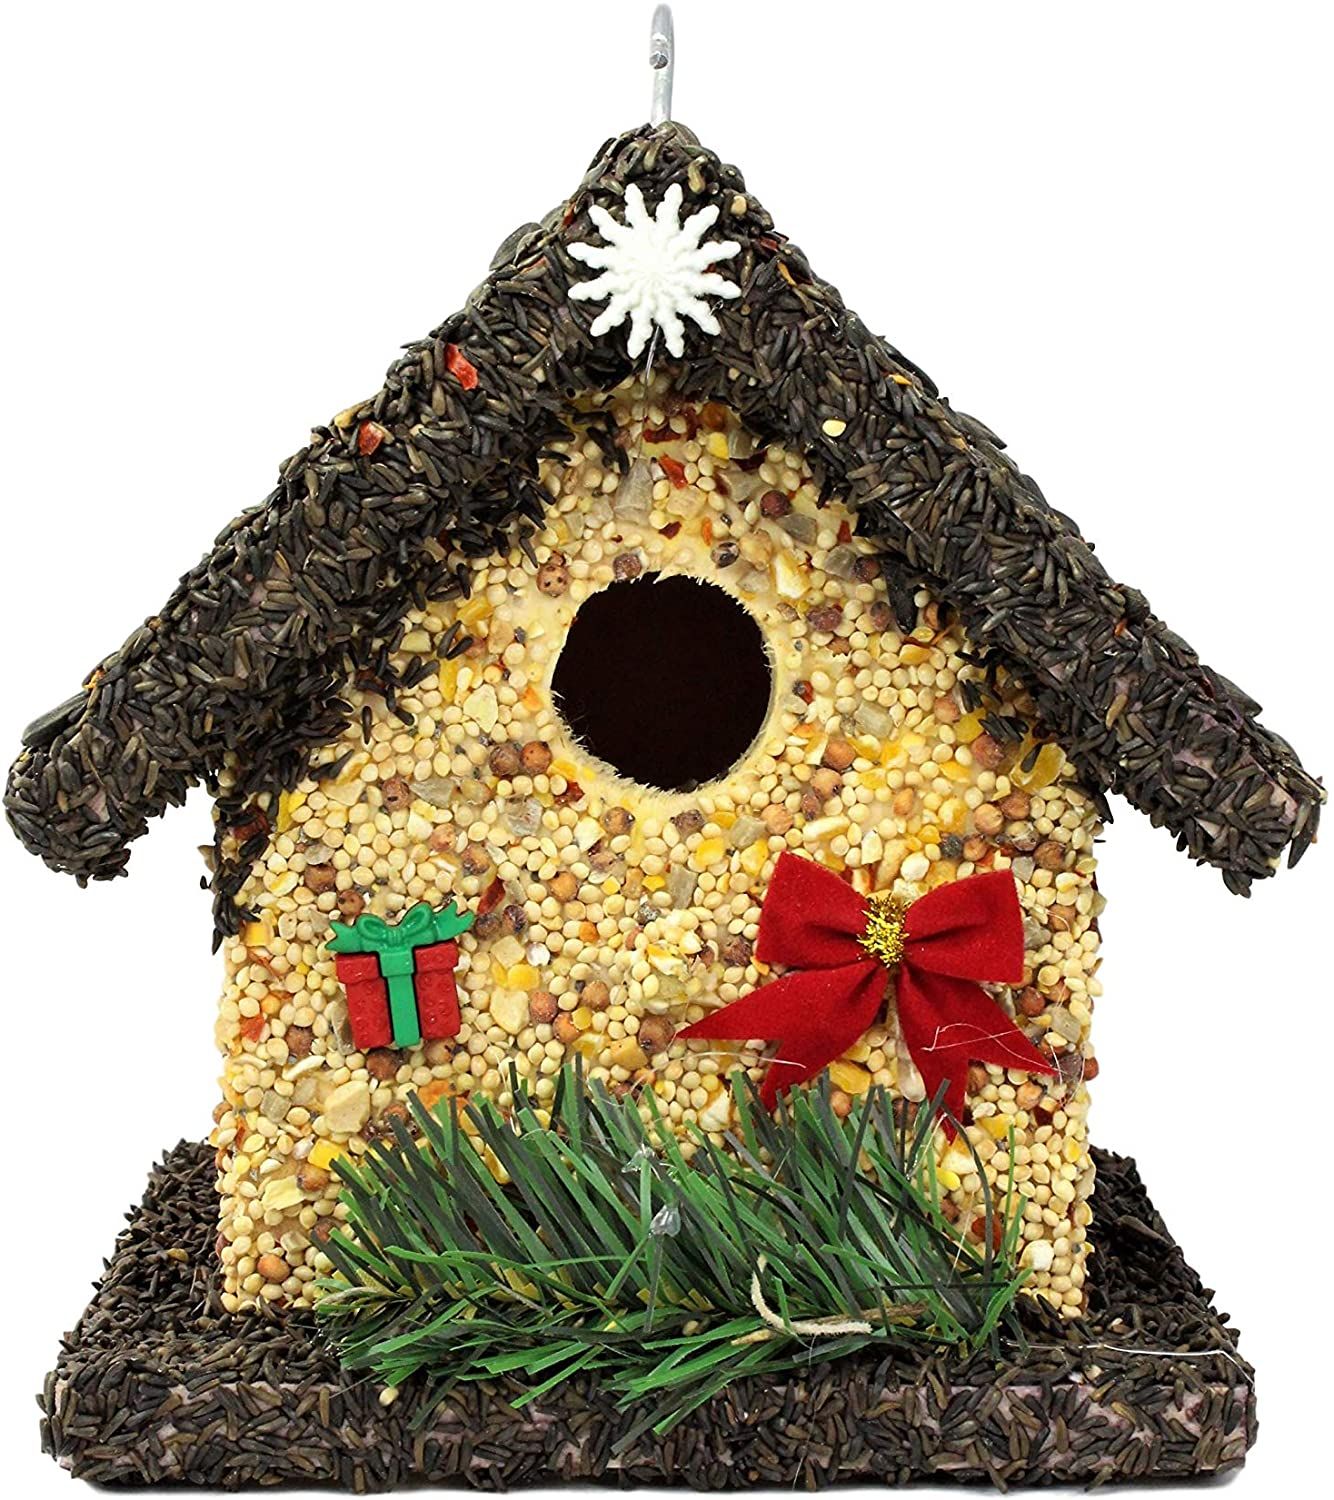 Edible Holiday Birdhouse